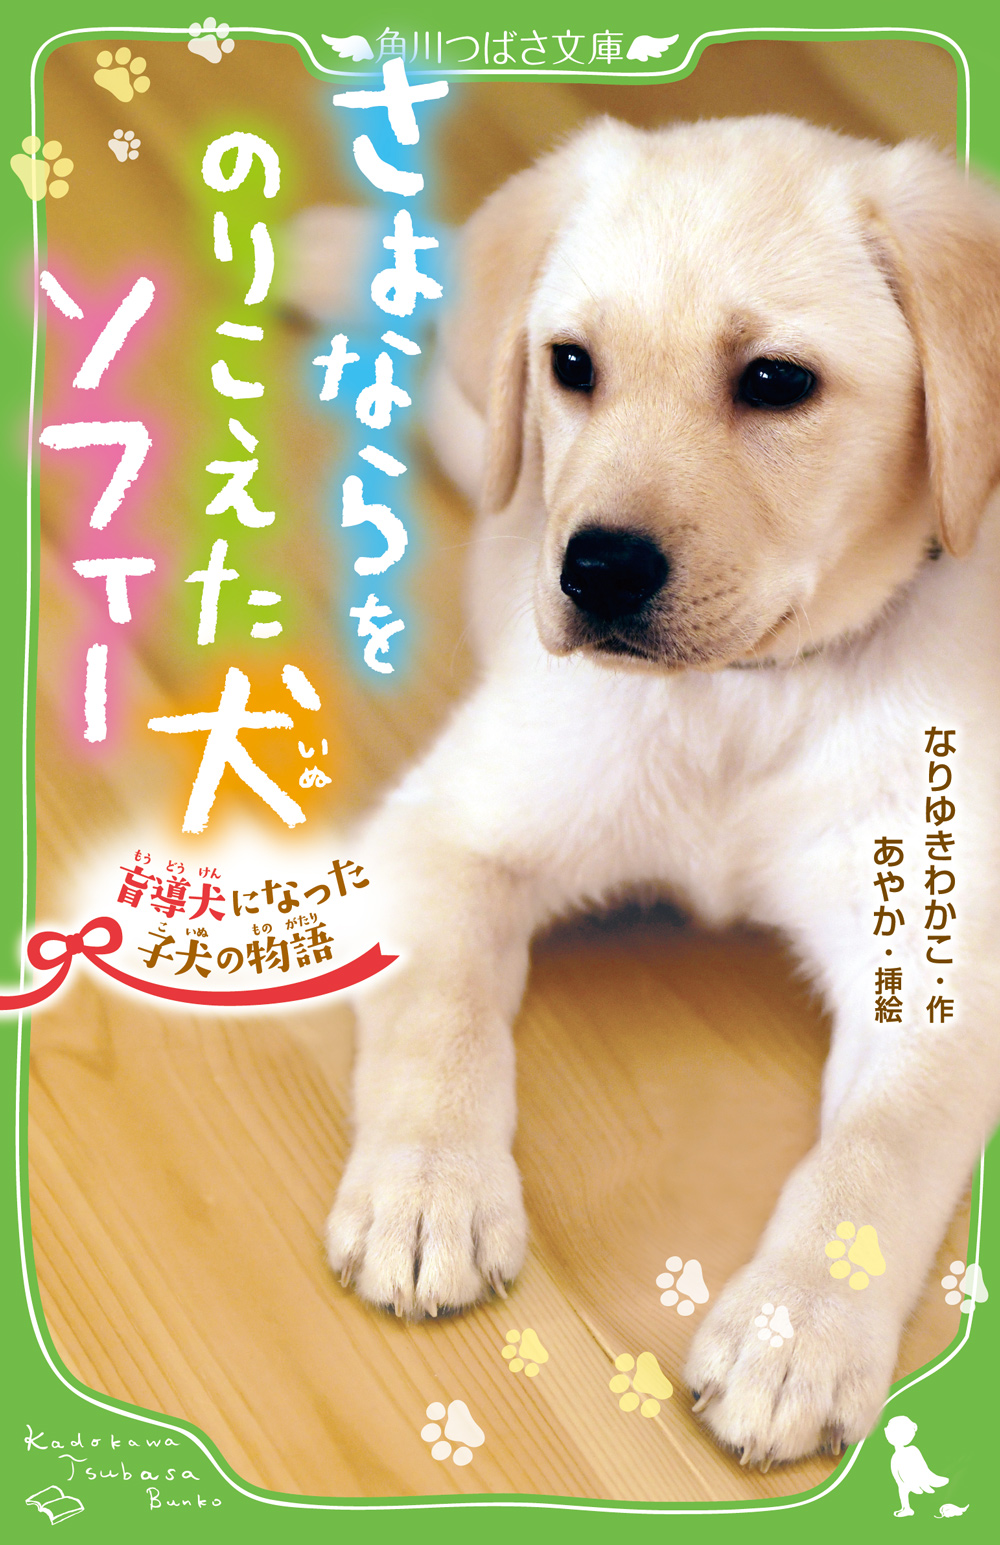 さよならをのりこえた犬 ソフィー 盲導犬になった子犬の物語の商品画像